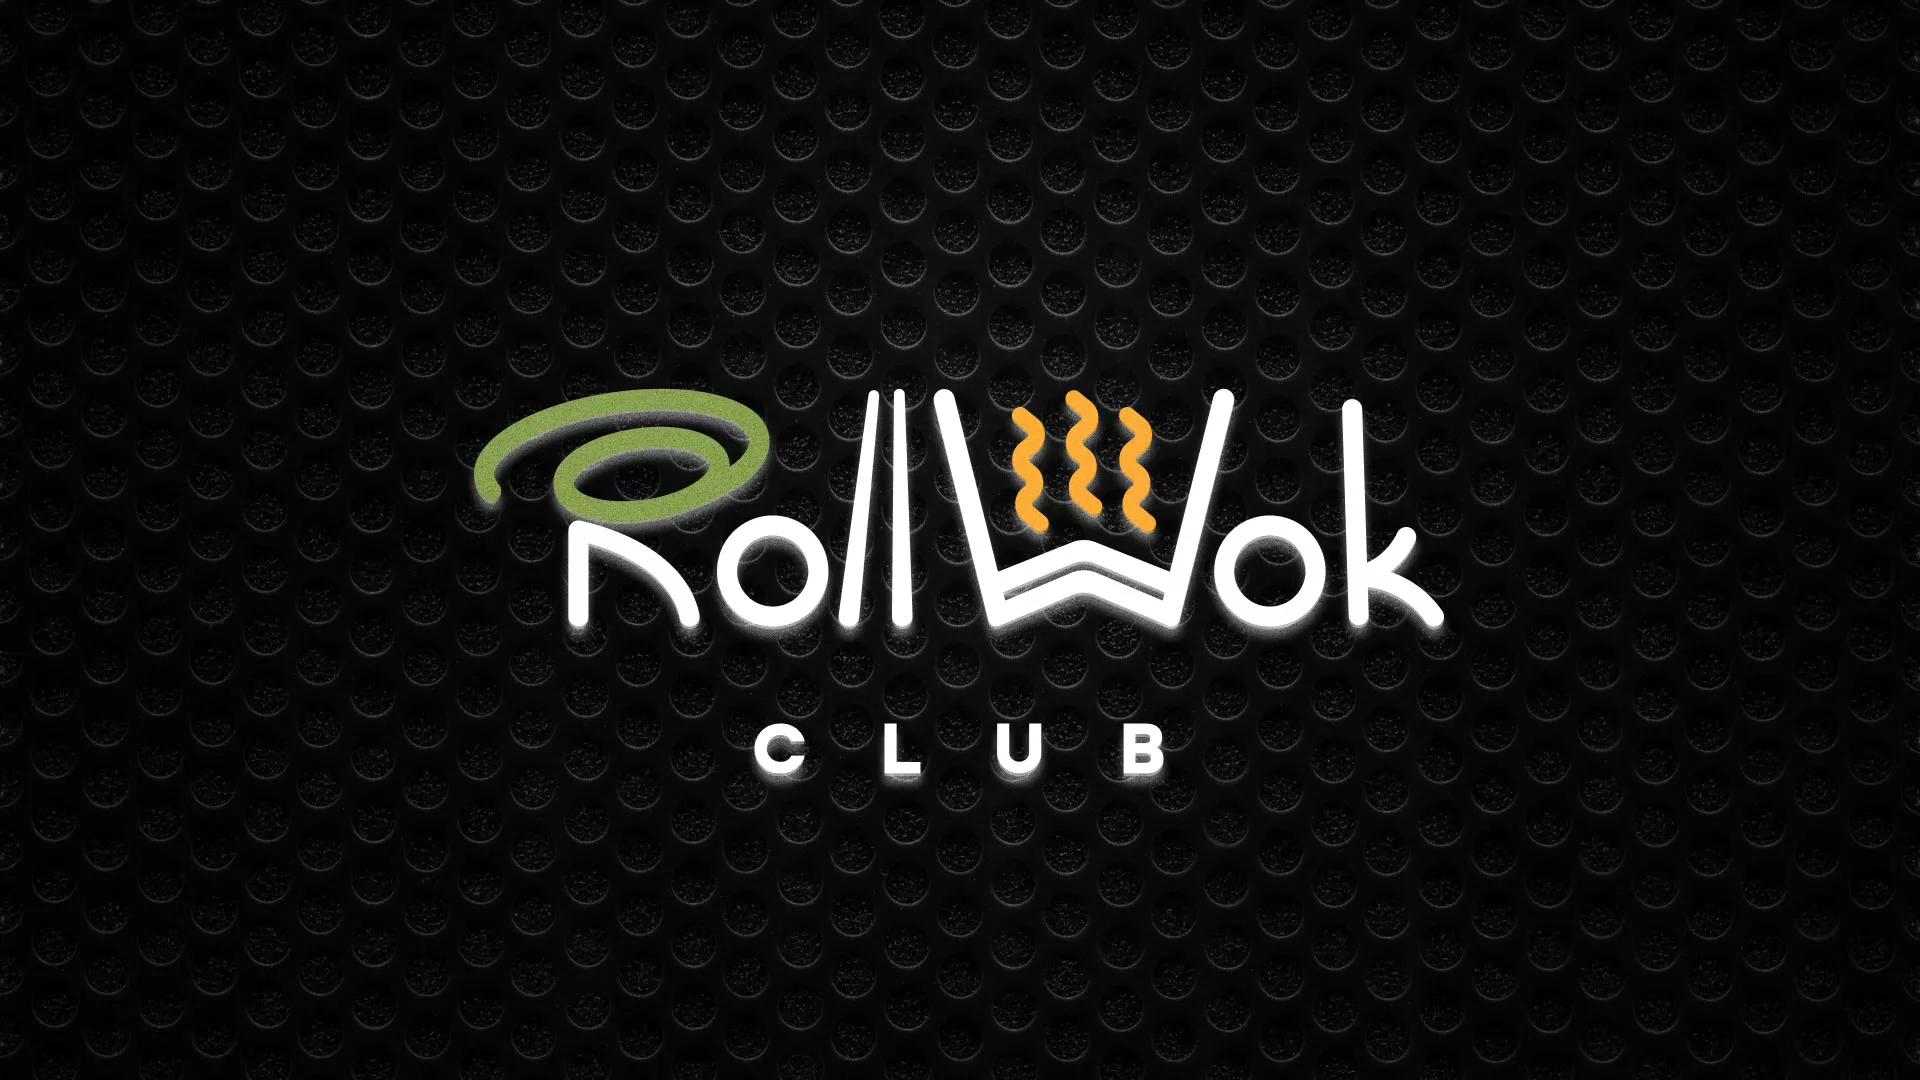 Брендирование торговых точек суши-бара «Roll Wok Club» в Жуковке